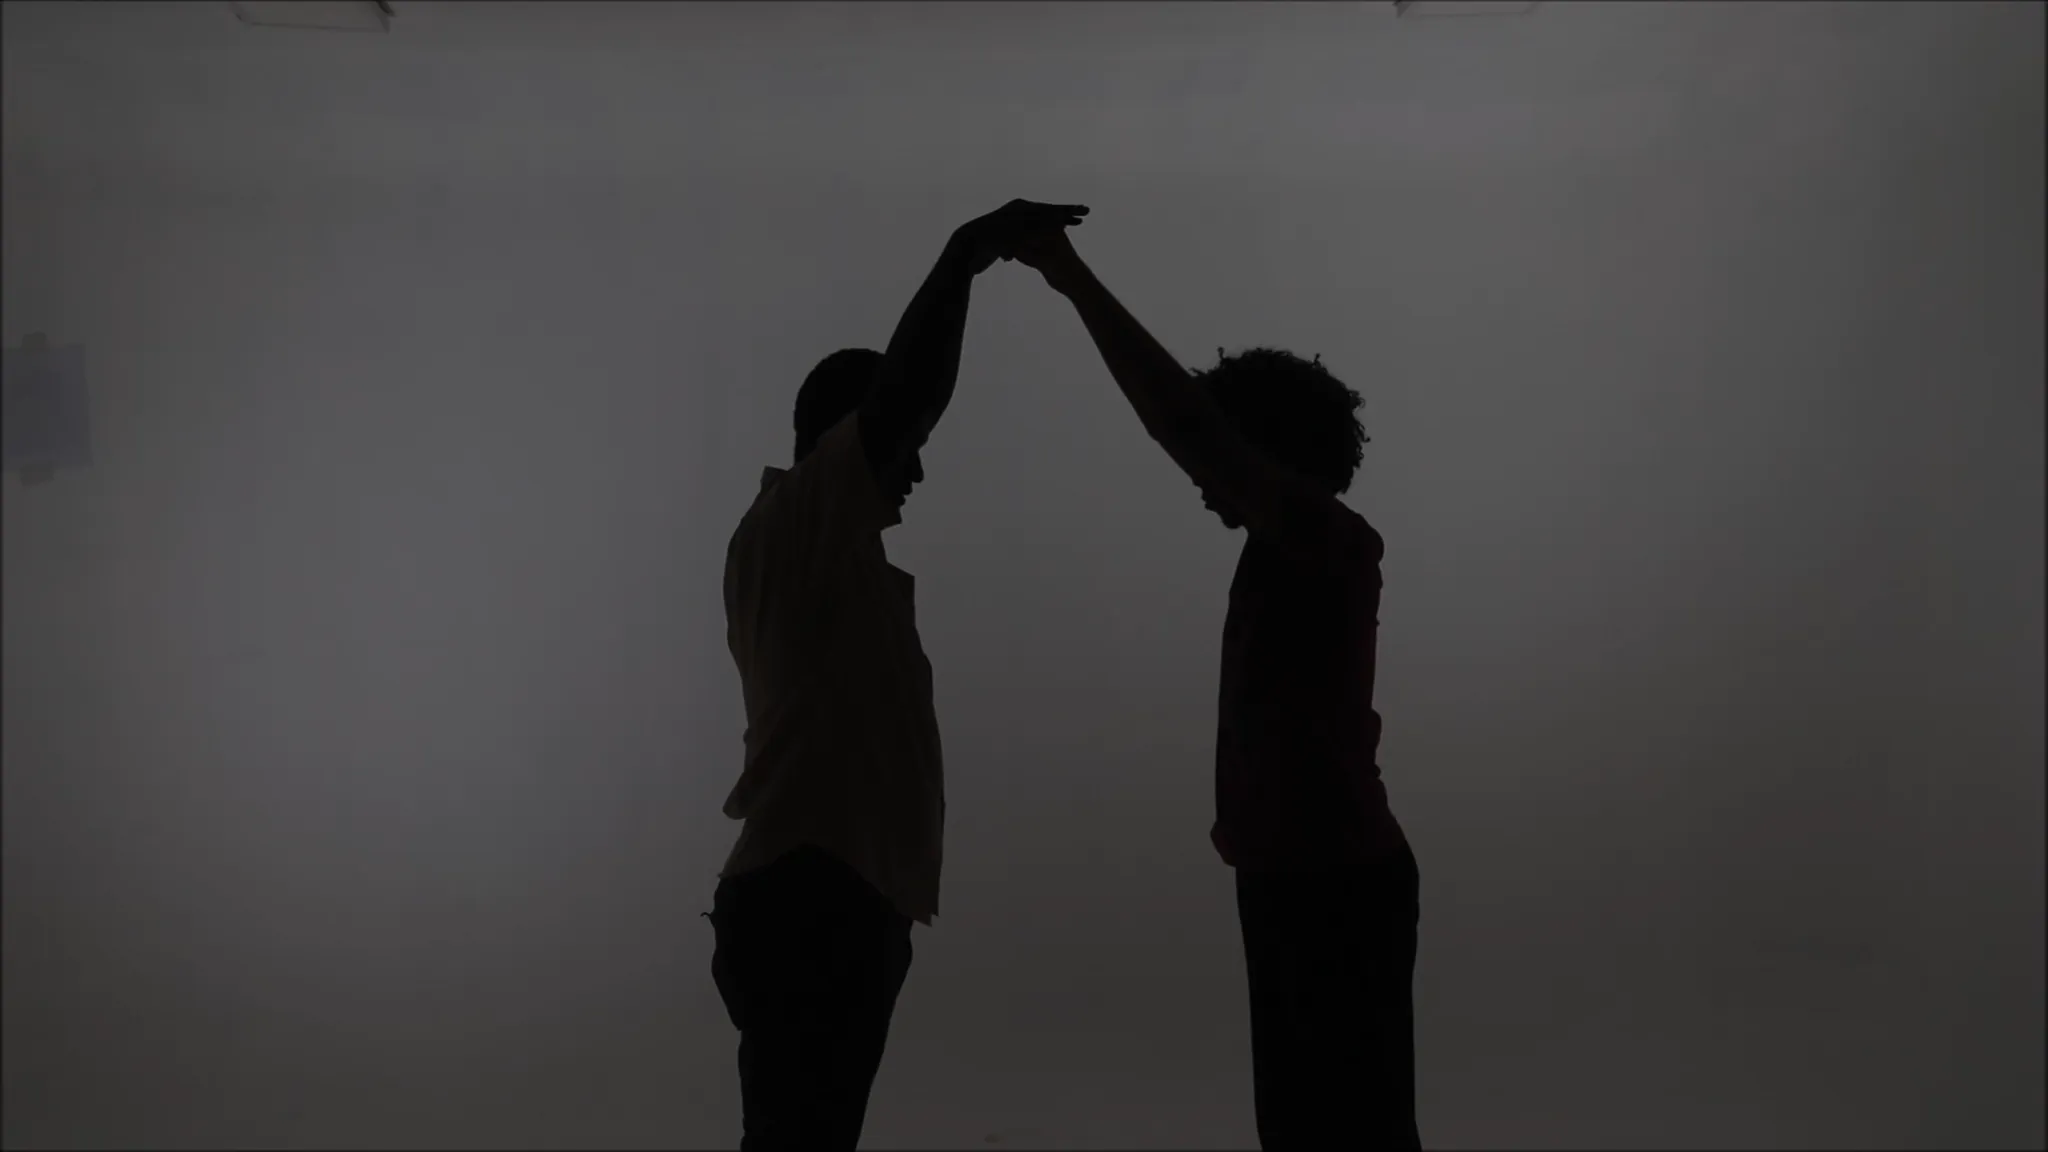 Zwarte schaduwen van twee personen die elkaars handen vasthouden, armen omhoog